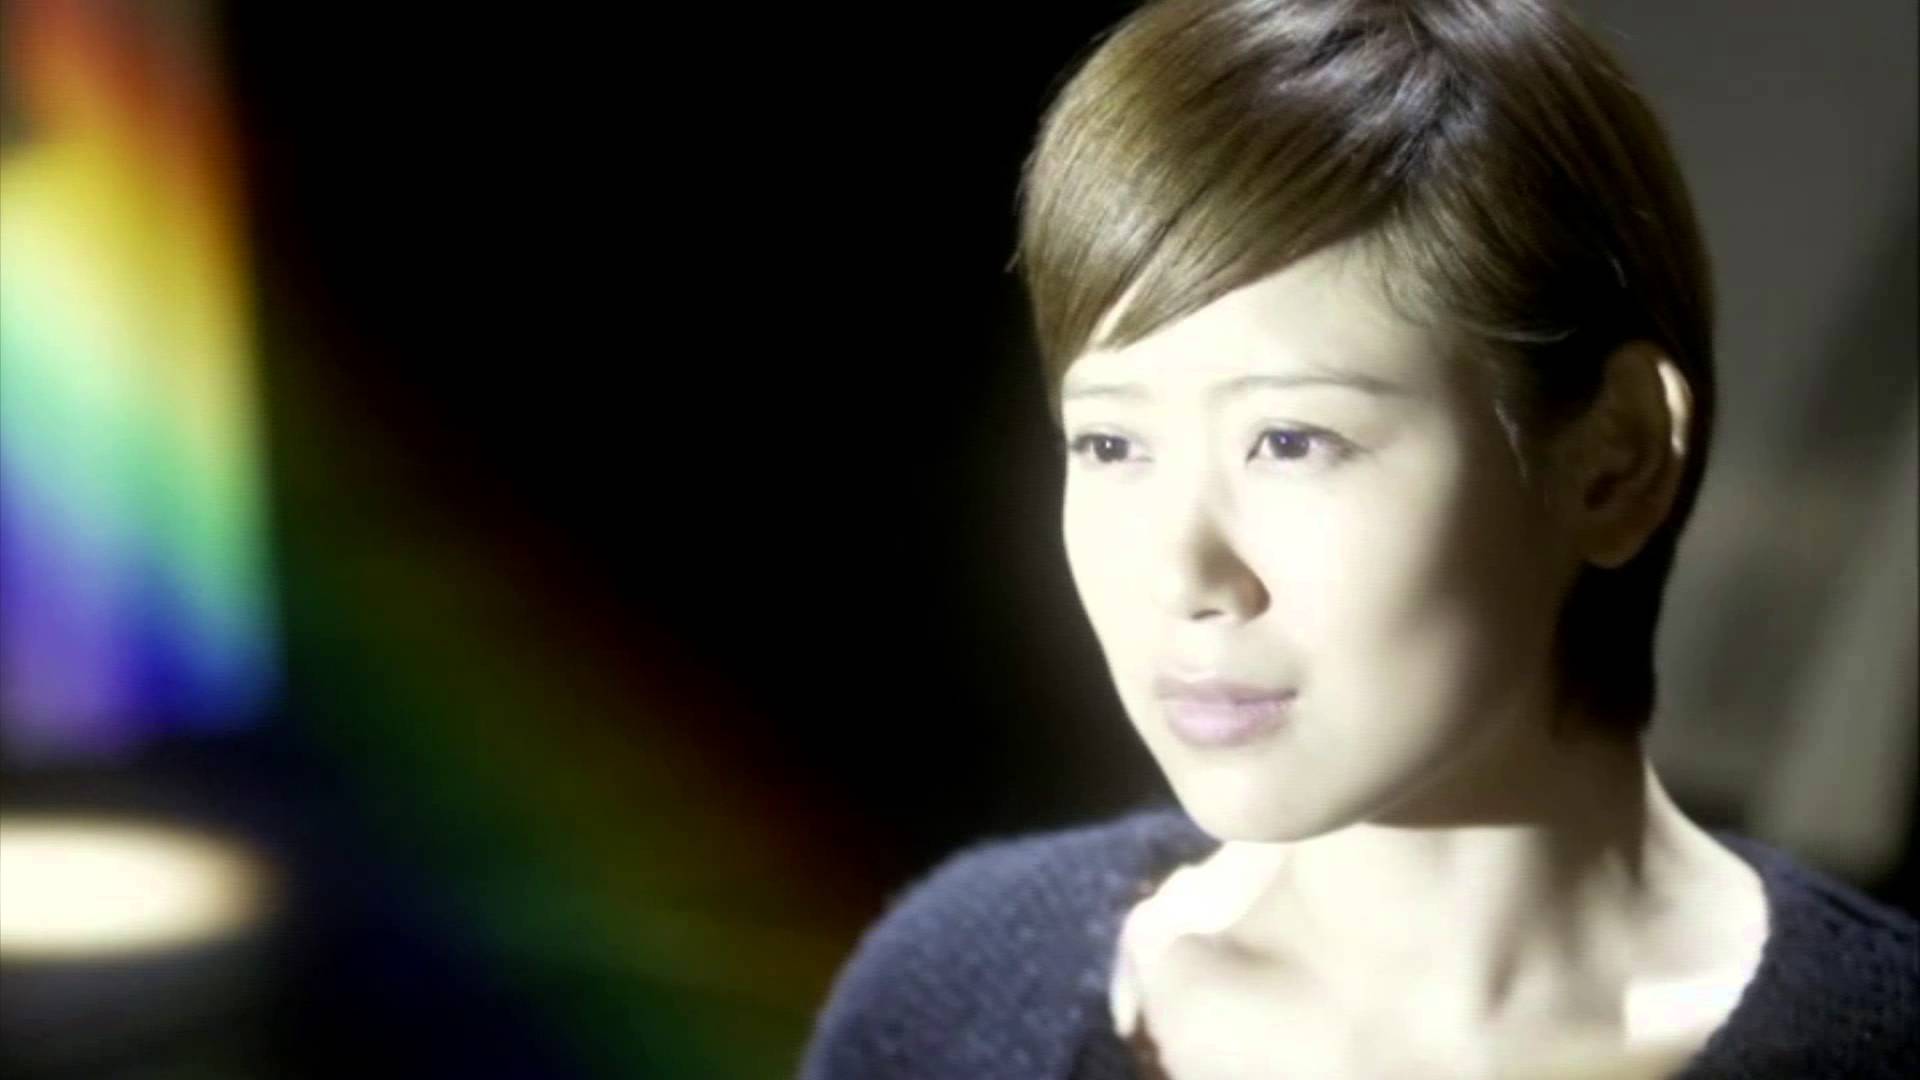 絢香 Ayaka - 「beautiful」 Music Video - YouTube